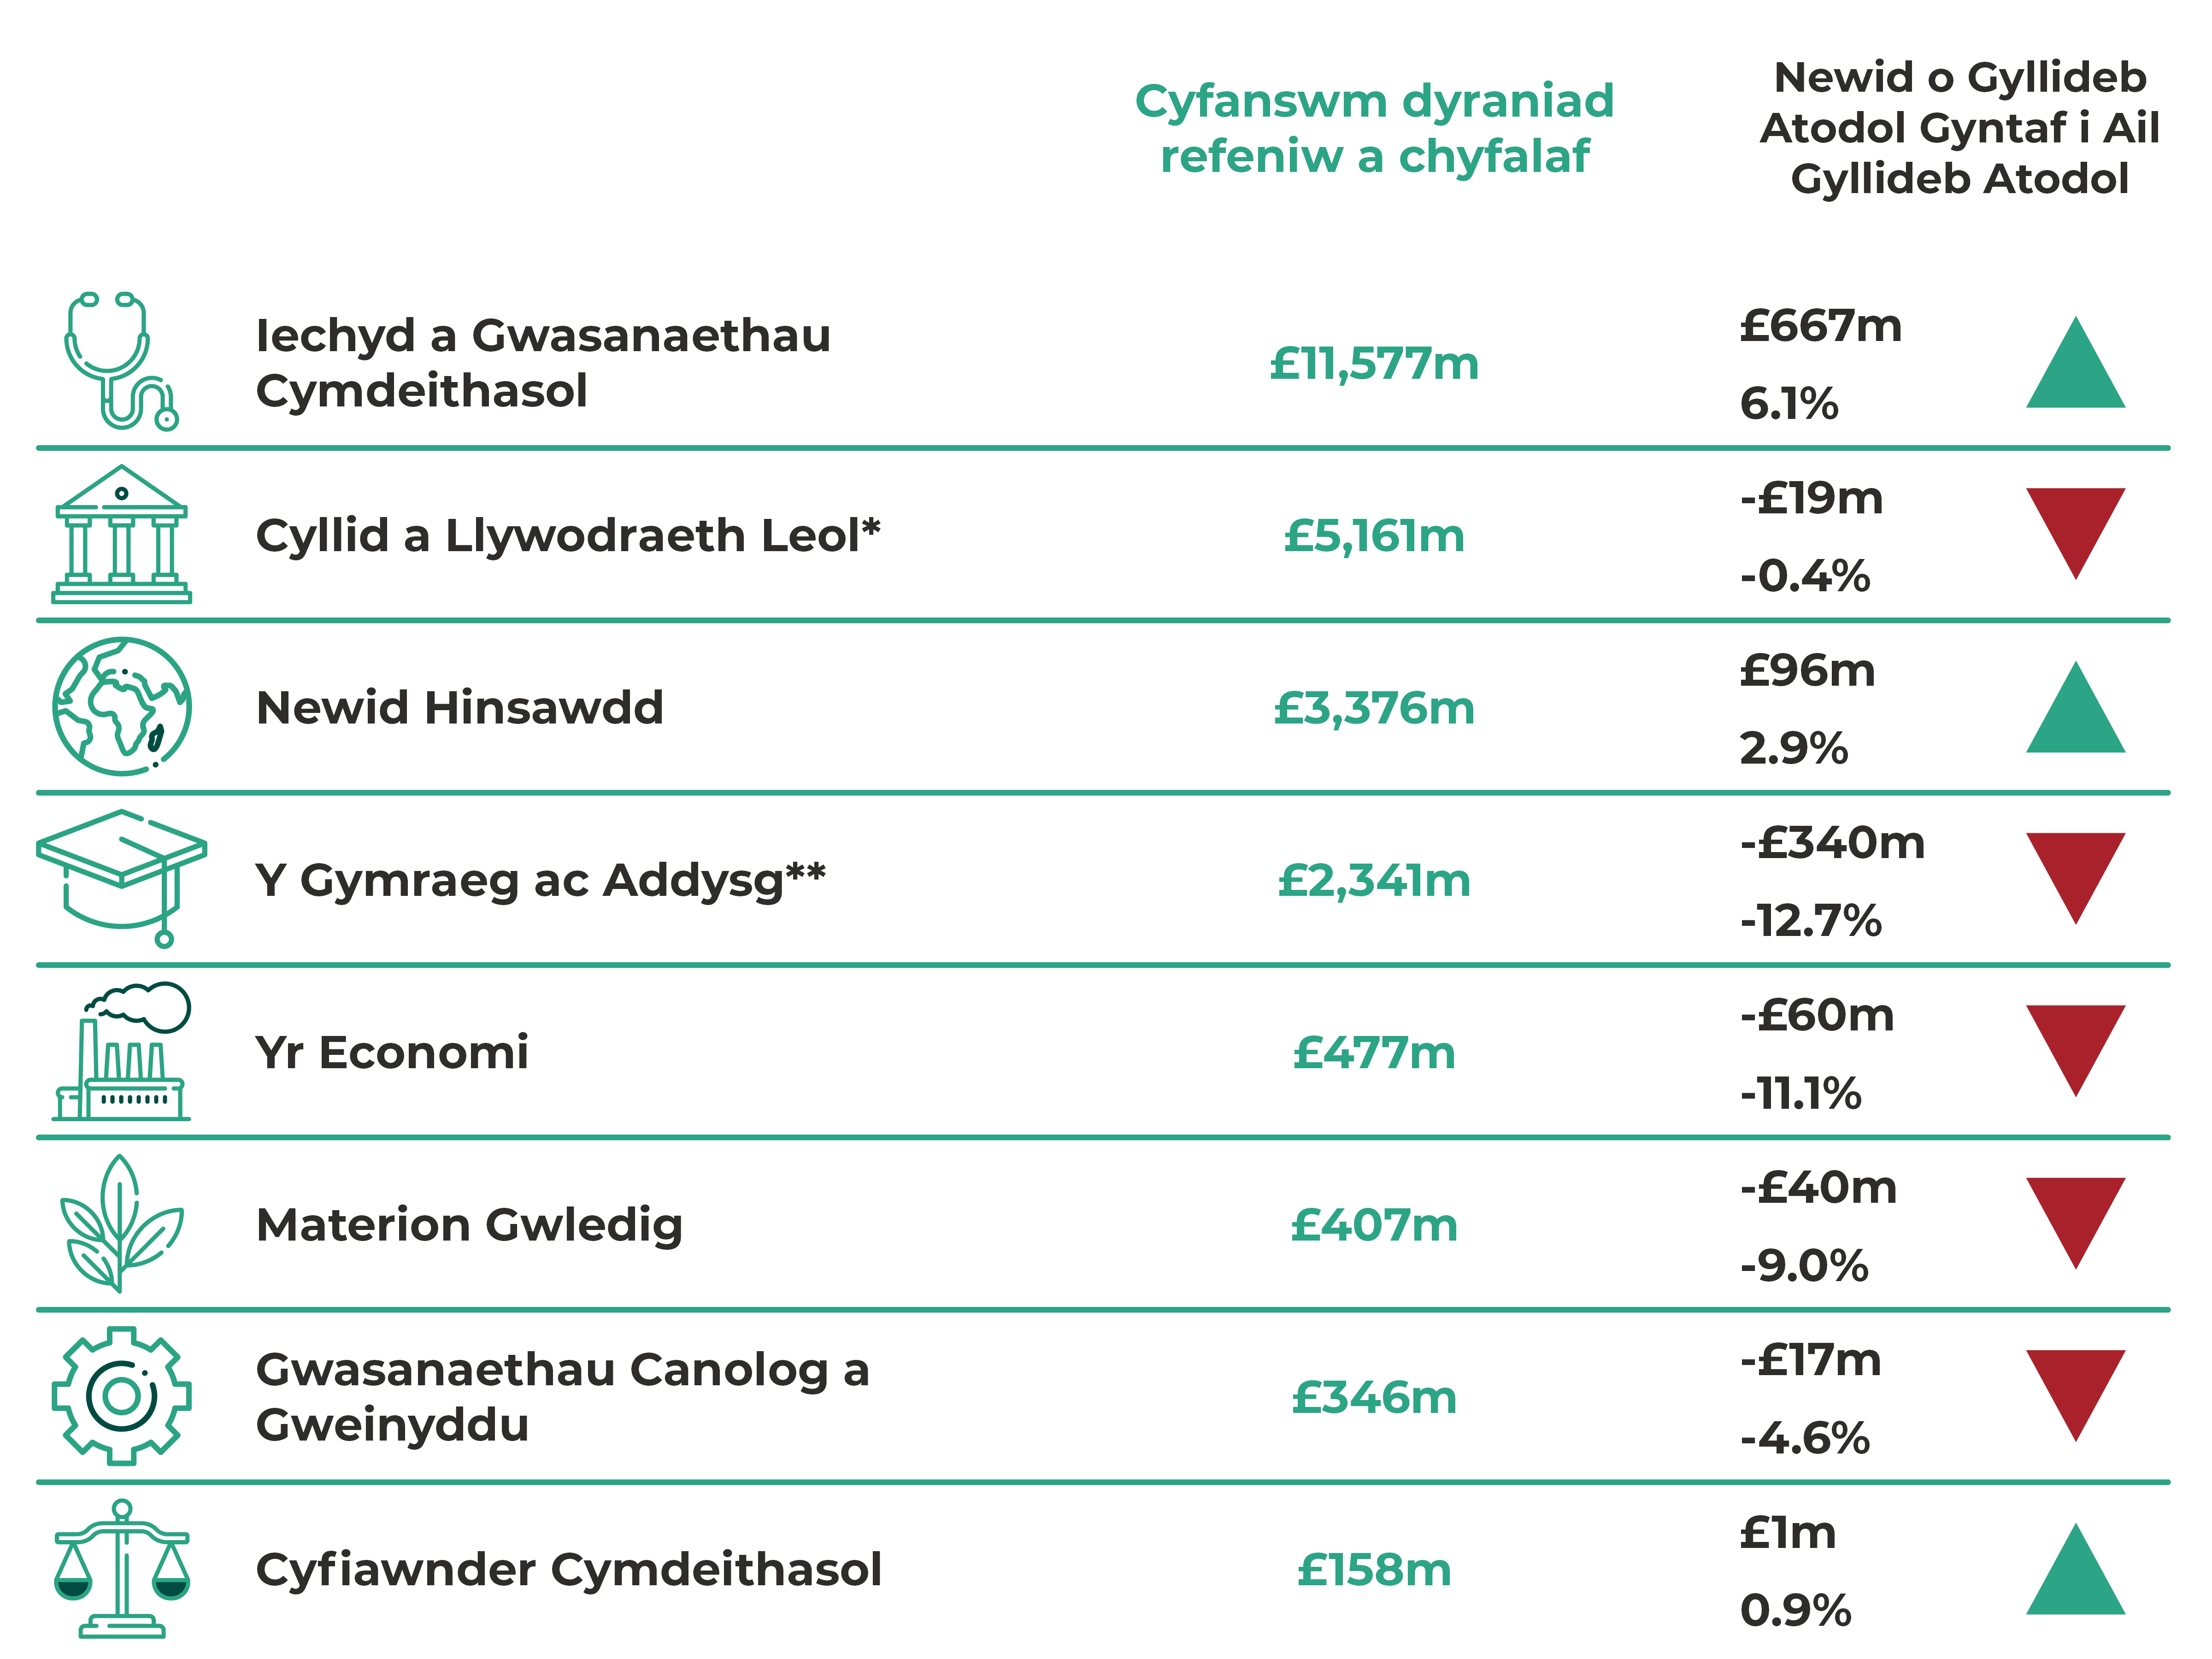 Iechyd a Gwasanaethau Cymdeithasol £11,577m, cynnydd o £667m (6.1%). Cyllid a Llywodraeth Leol £5,161m, gostyngiad o £19m (-0.4%). Newid Hinsawdd £3,376m, cynnydd o £96m (2.9%). Y Gymraeg ac Addysg £2,341m, gostyngiad o £340m (-12.7%). Yr Economi £477m, gostyngiad o £60m (-11.1%). Materion Gwledig £407m, gostyngiad o £40m (-9.0%). Gwasanaethau Canolog a Gweinyddu £346m, gostyngiad o £17m (-4.6%). Cyfiawnder Cymdeithasol £158m, cynnydd o £1m (0.9%).